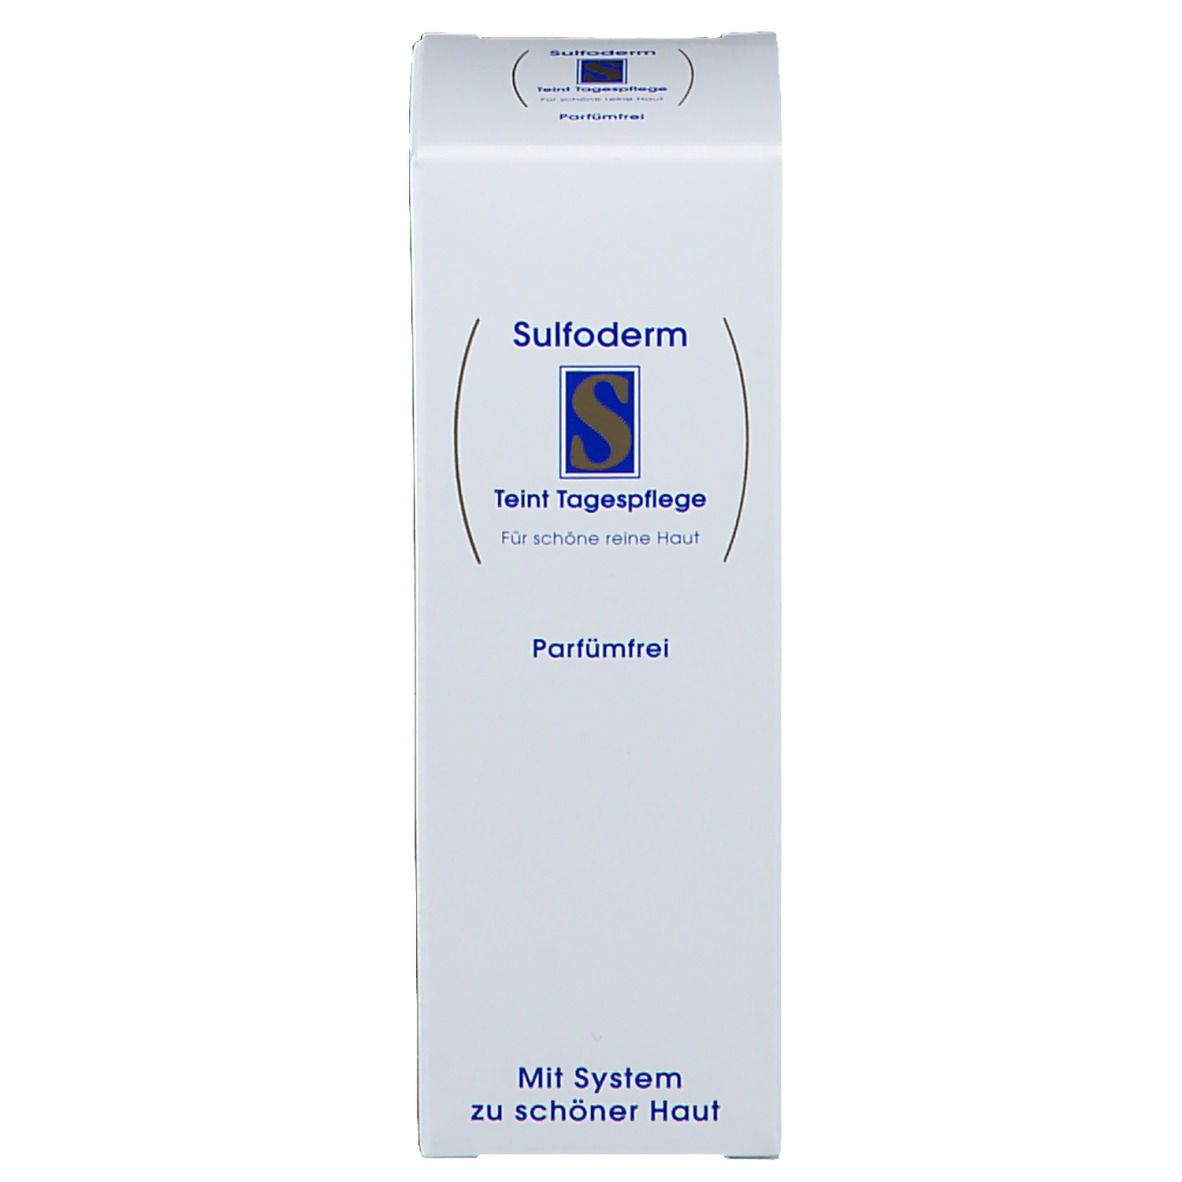 Sulfoderm® S Teint Tagespflege parfümfrei